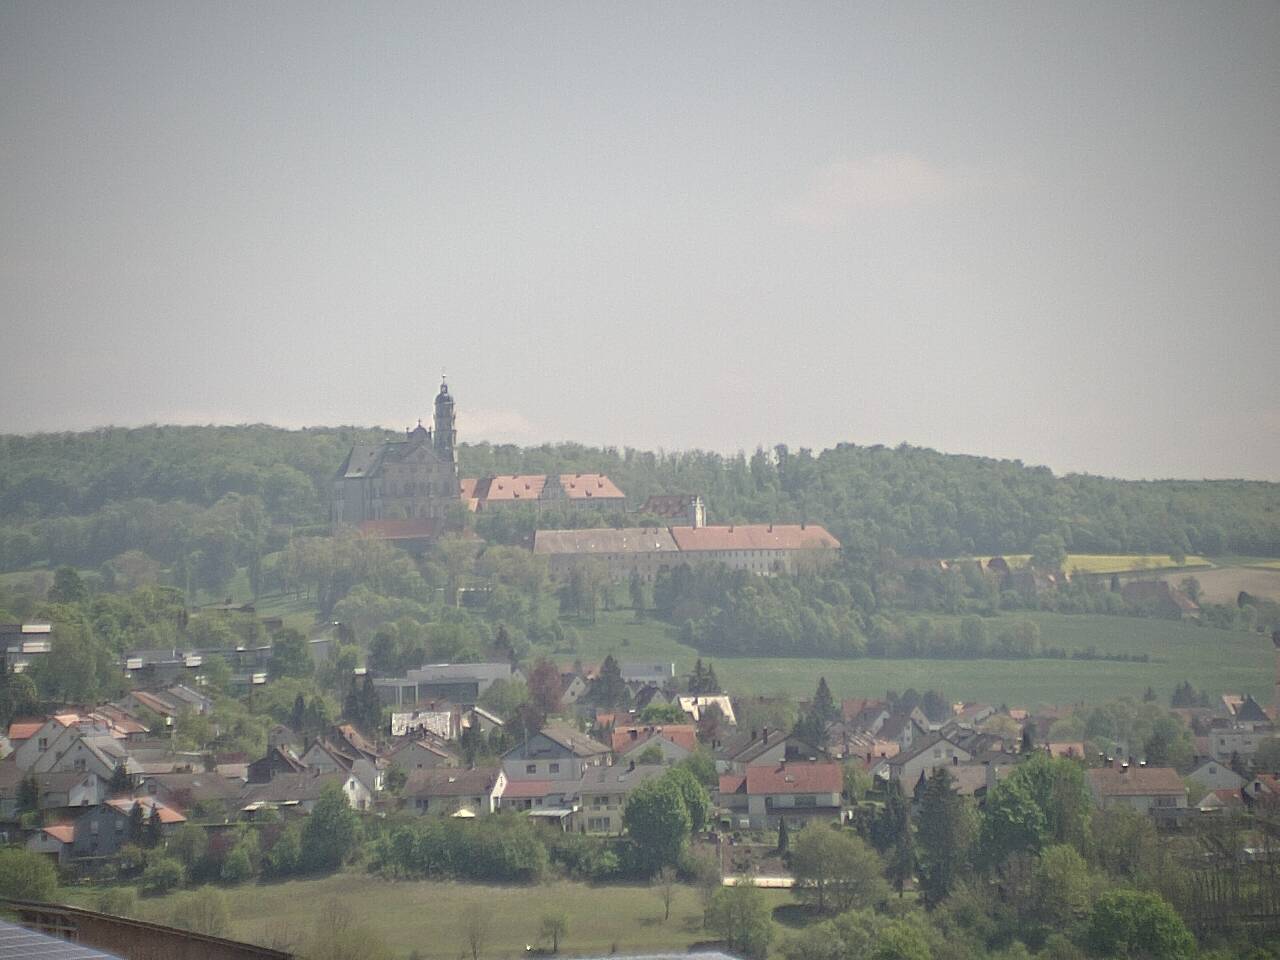 Stadt Neresheim